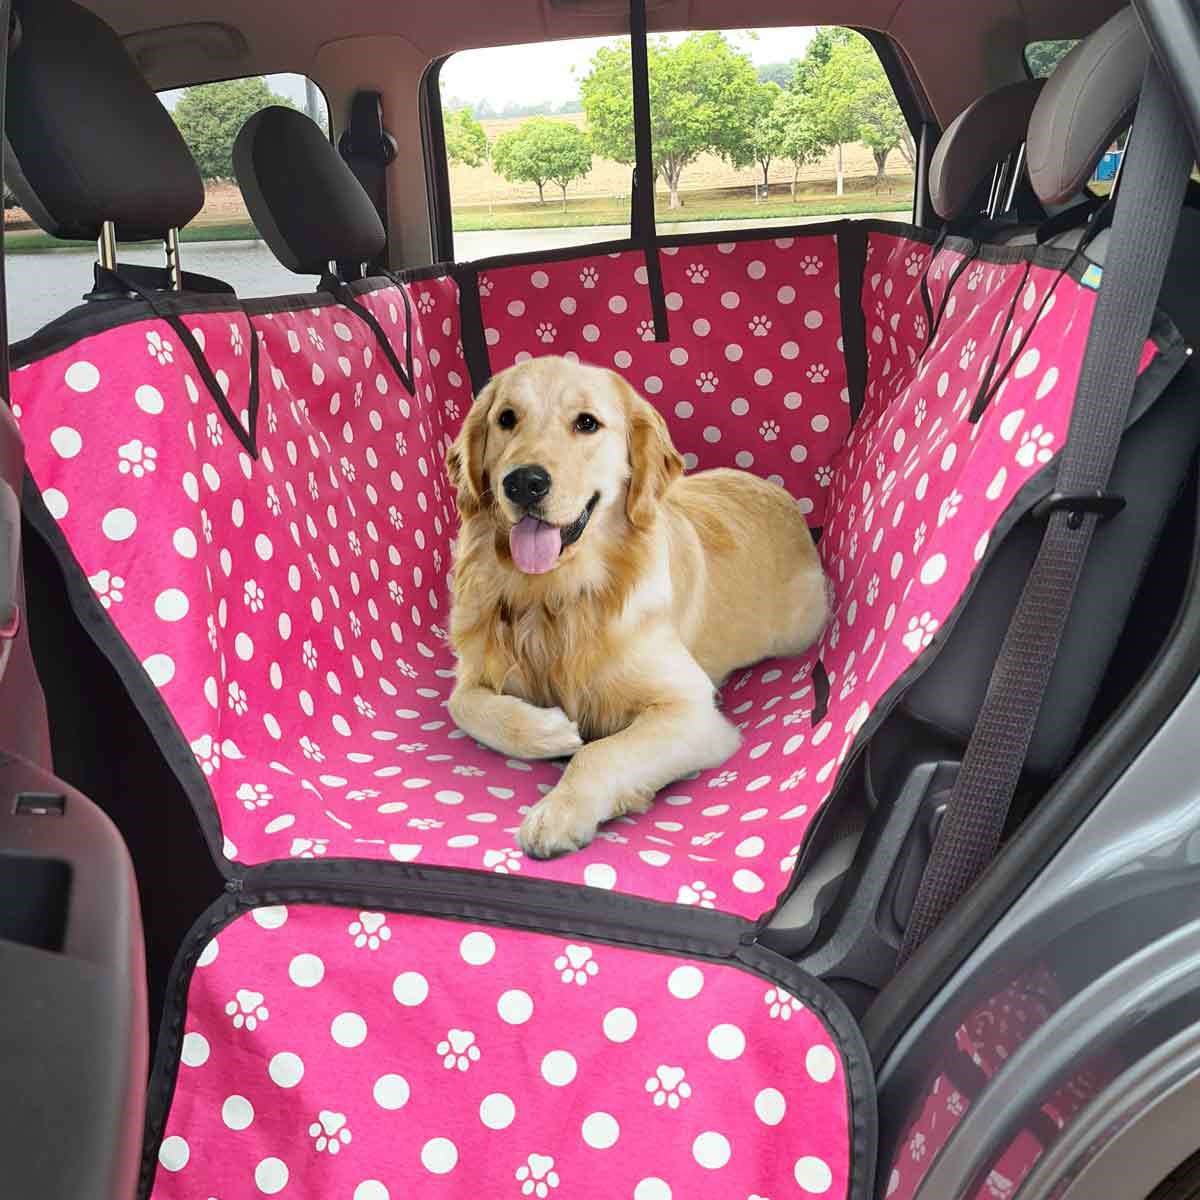 Capa Pet impermeável PLUS PREMIUM para levar cães no carro (Protege banco e portas!)